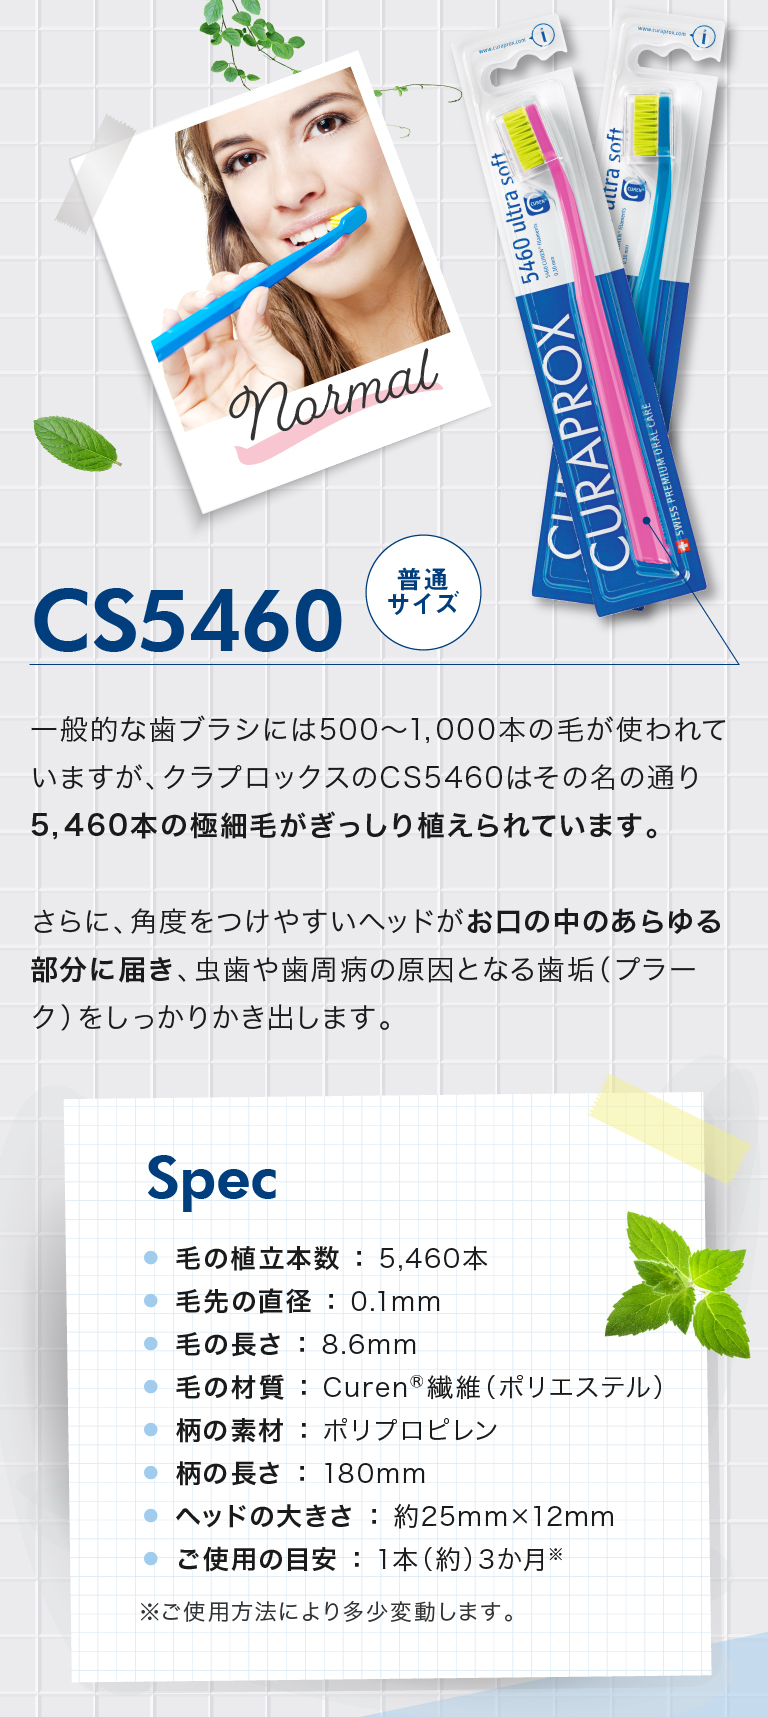 クラプロックスの定番 まずはCS5460からスタート！CS5460普通サイズ